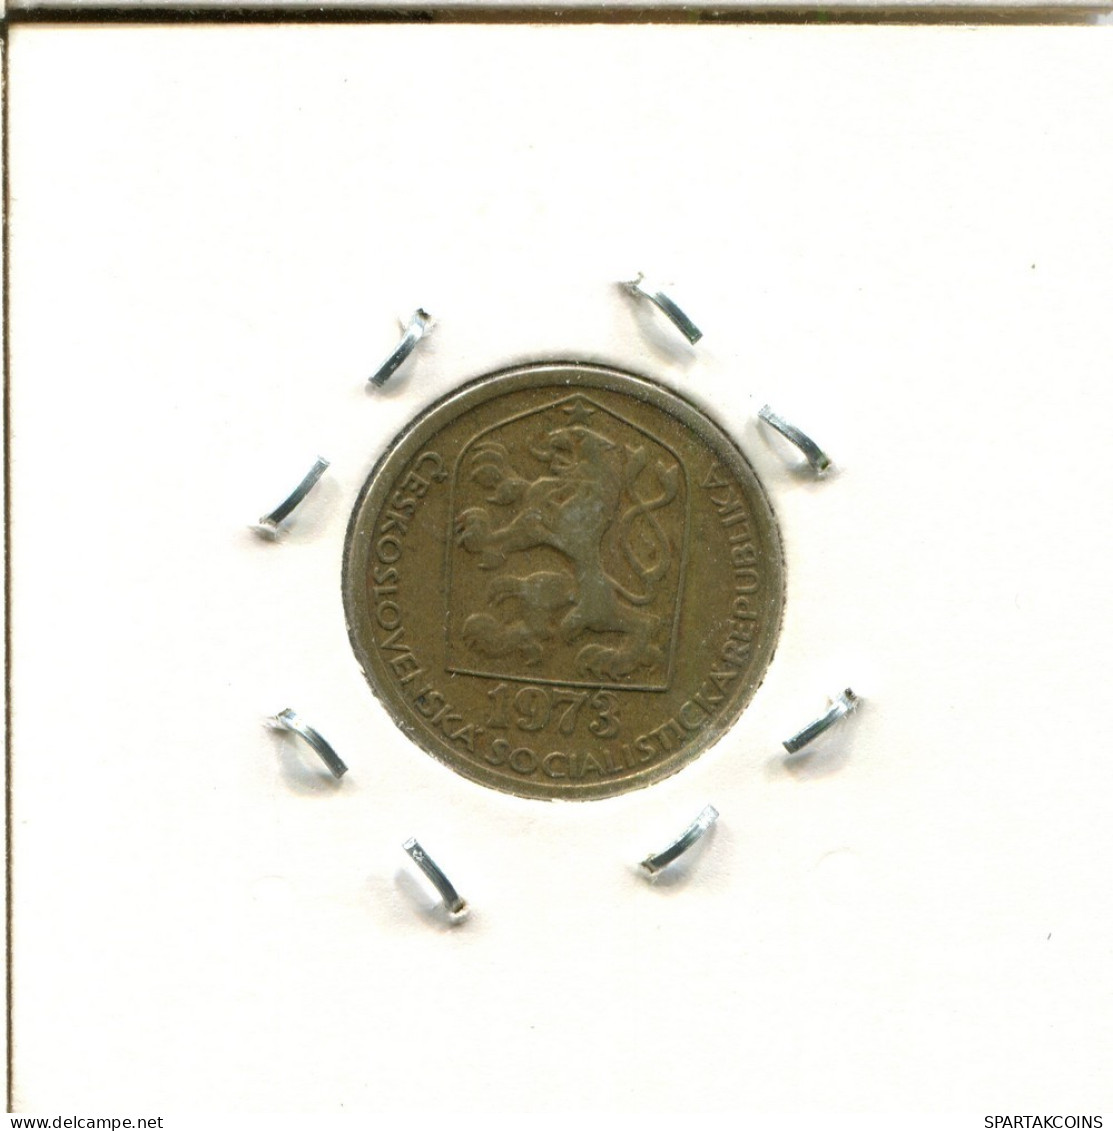 20 HALERU 1973 CHECOSLOVAQUIA CZECHOESLOVAQUIA SLOVAKIA Moneda #AS531.E.A - Tschechoslowakei